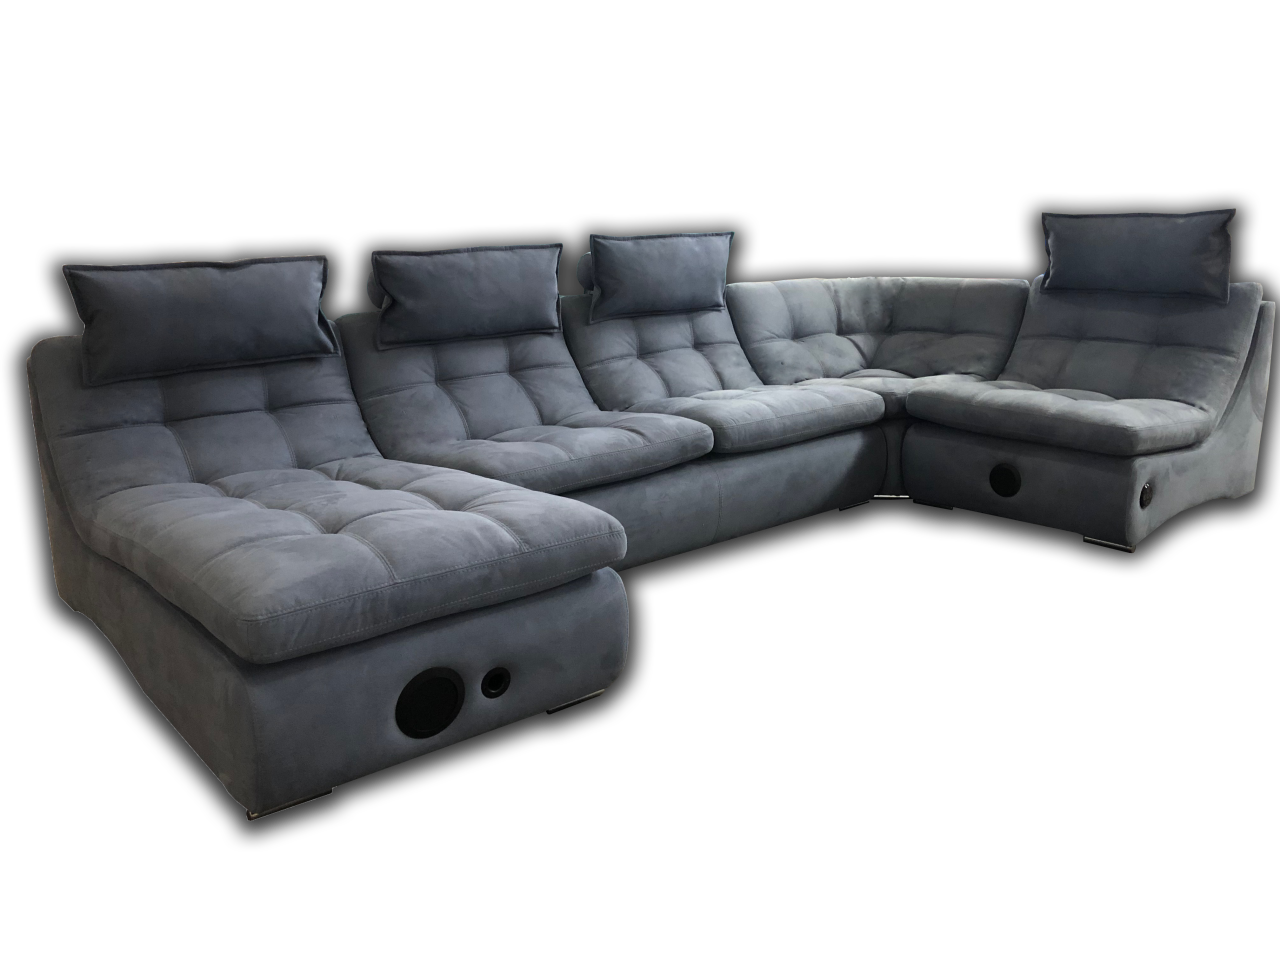 Модульный диван «Домино»